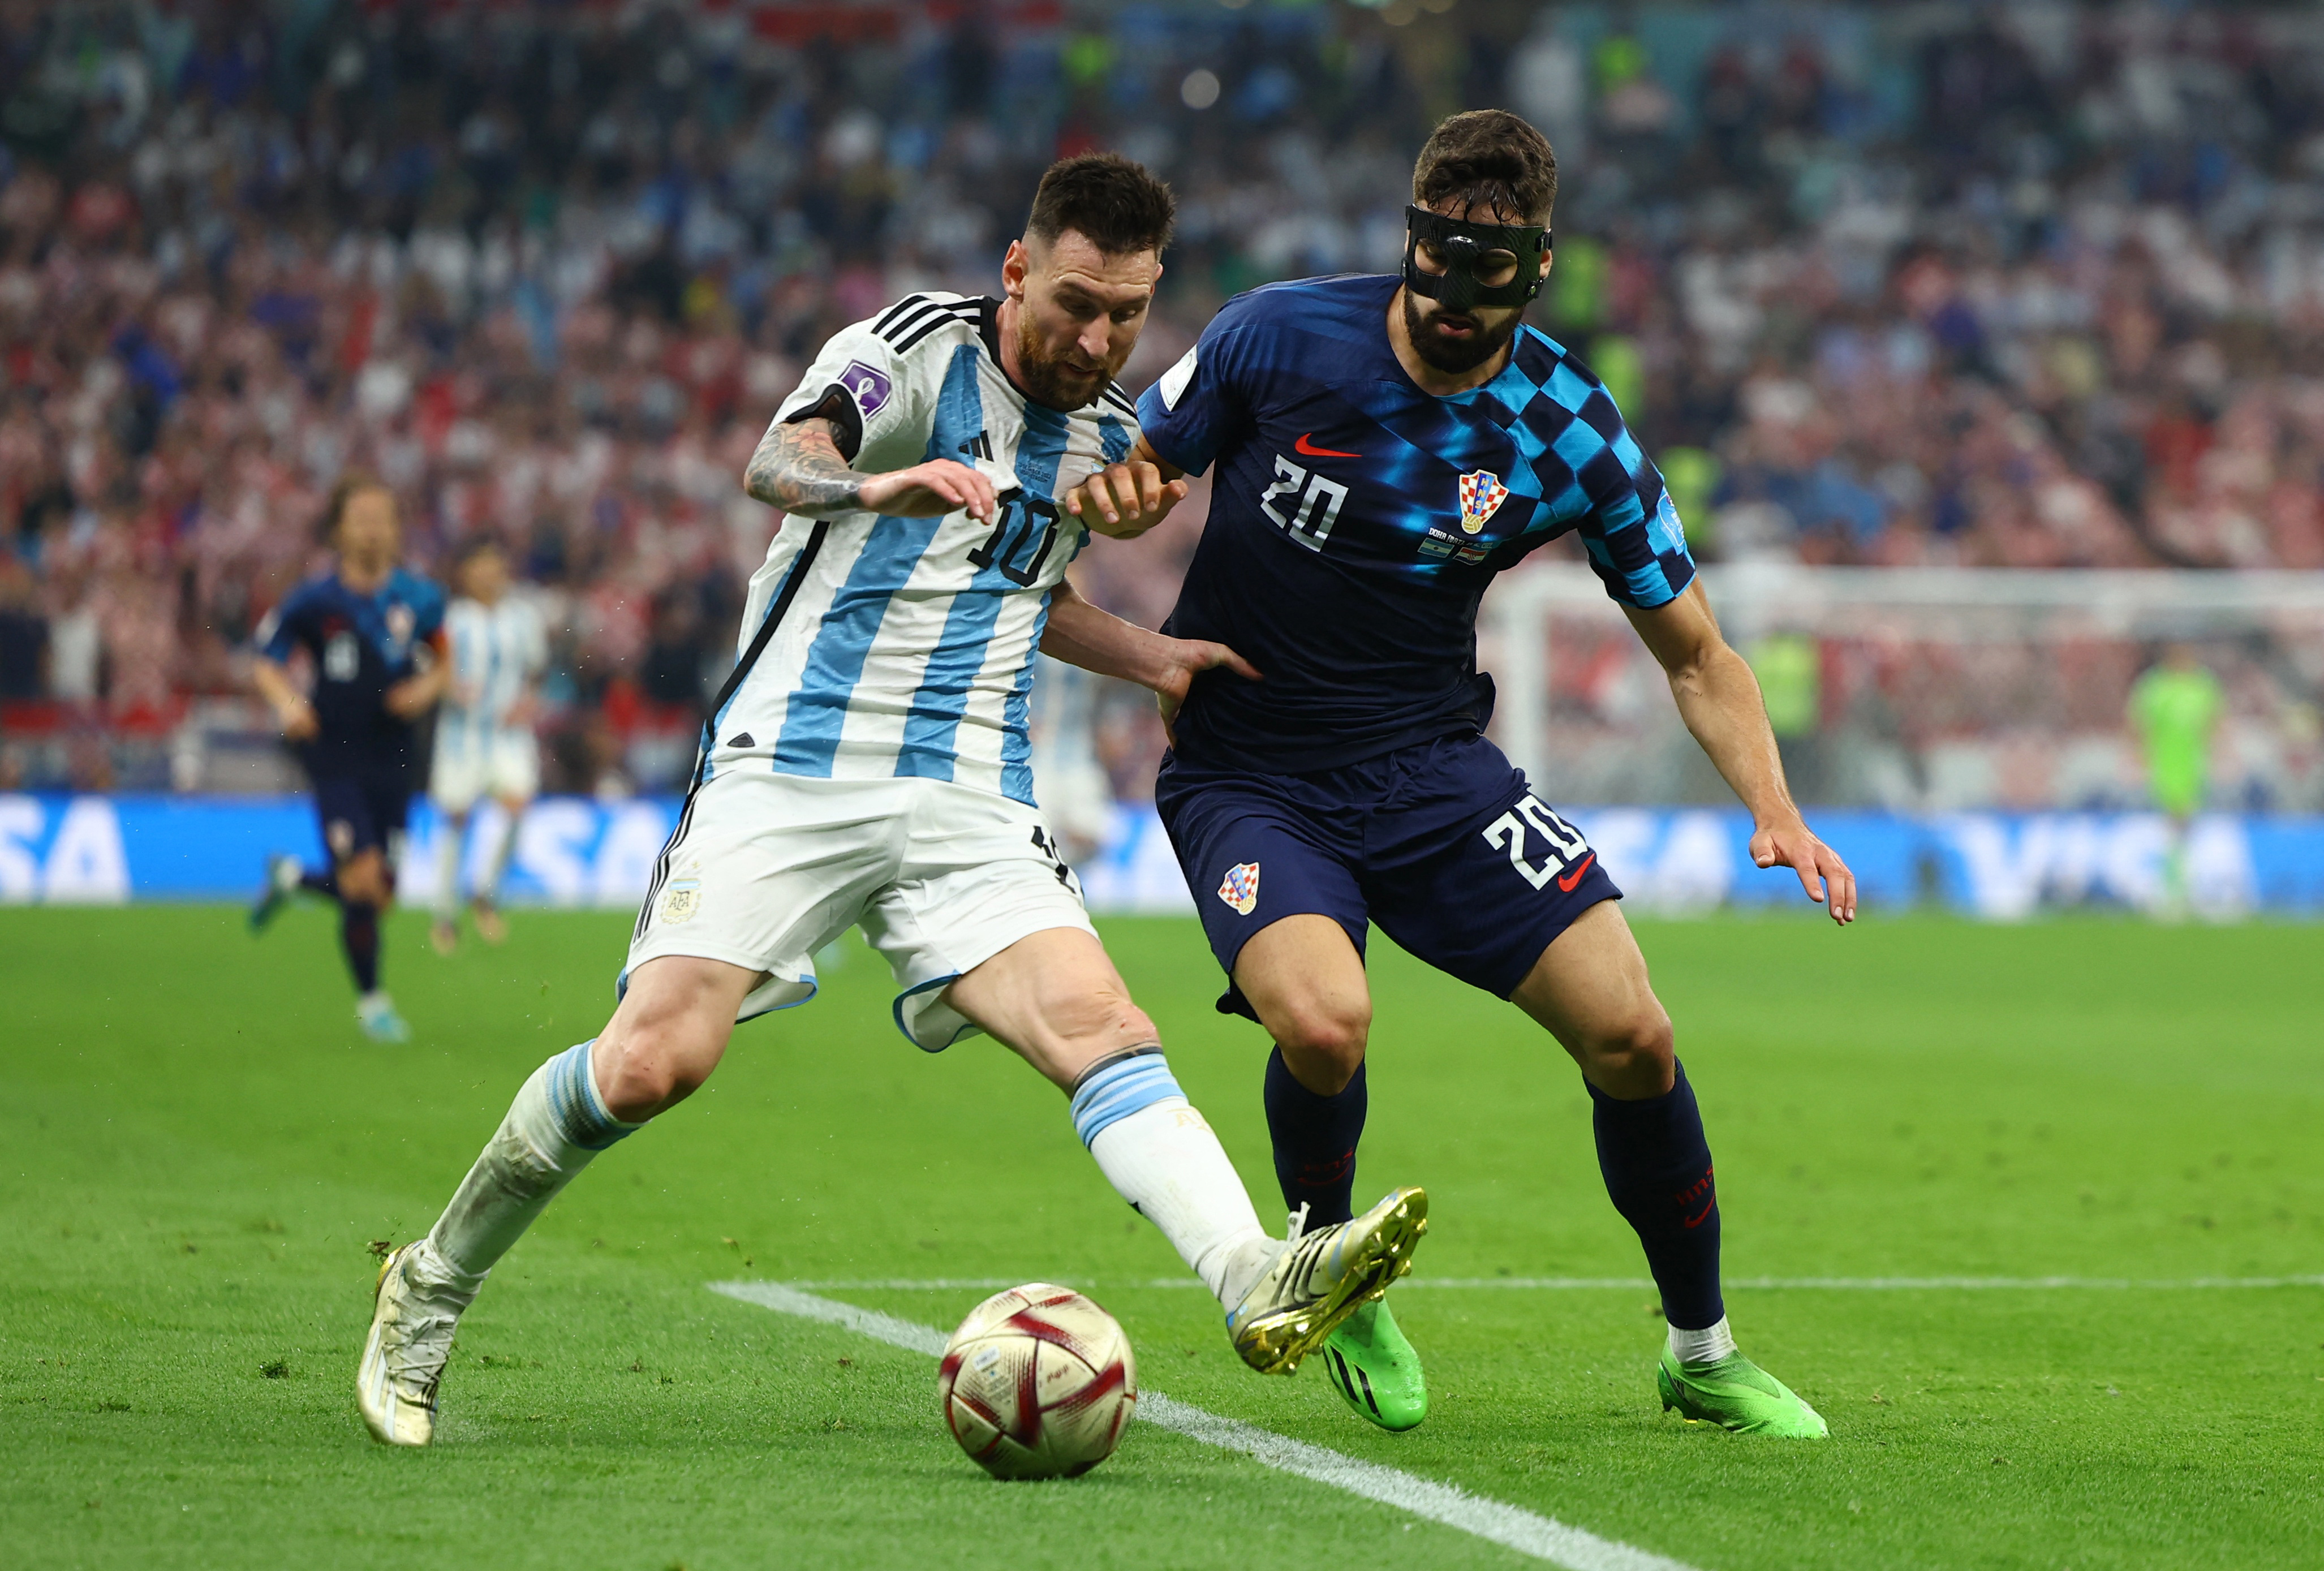 Lionel Messi vs. Josko Gvardiol, aquel enfrentamiento que permanecerá en la historia  (Foto: Reuters/Molly Darlington)